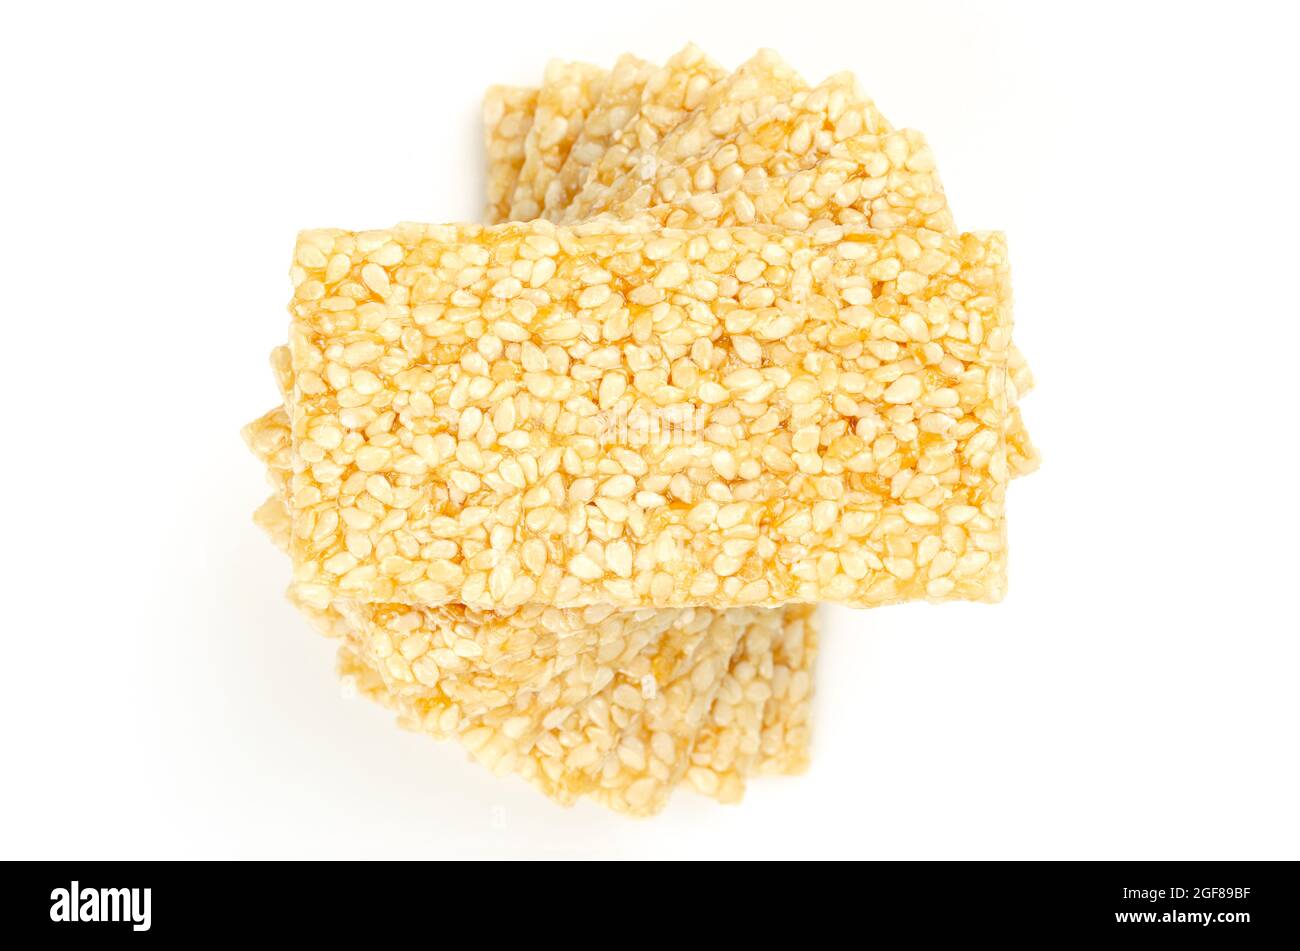 Mucchio di sesamo fragili barre, dall'alto, su sfondo bianco. Sesamo semi caramelle o anche crunch, una confezione di semi di sesamo e miele. Foto Stock